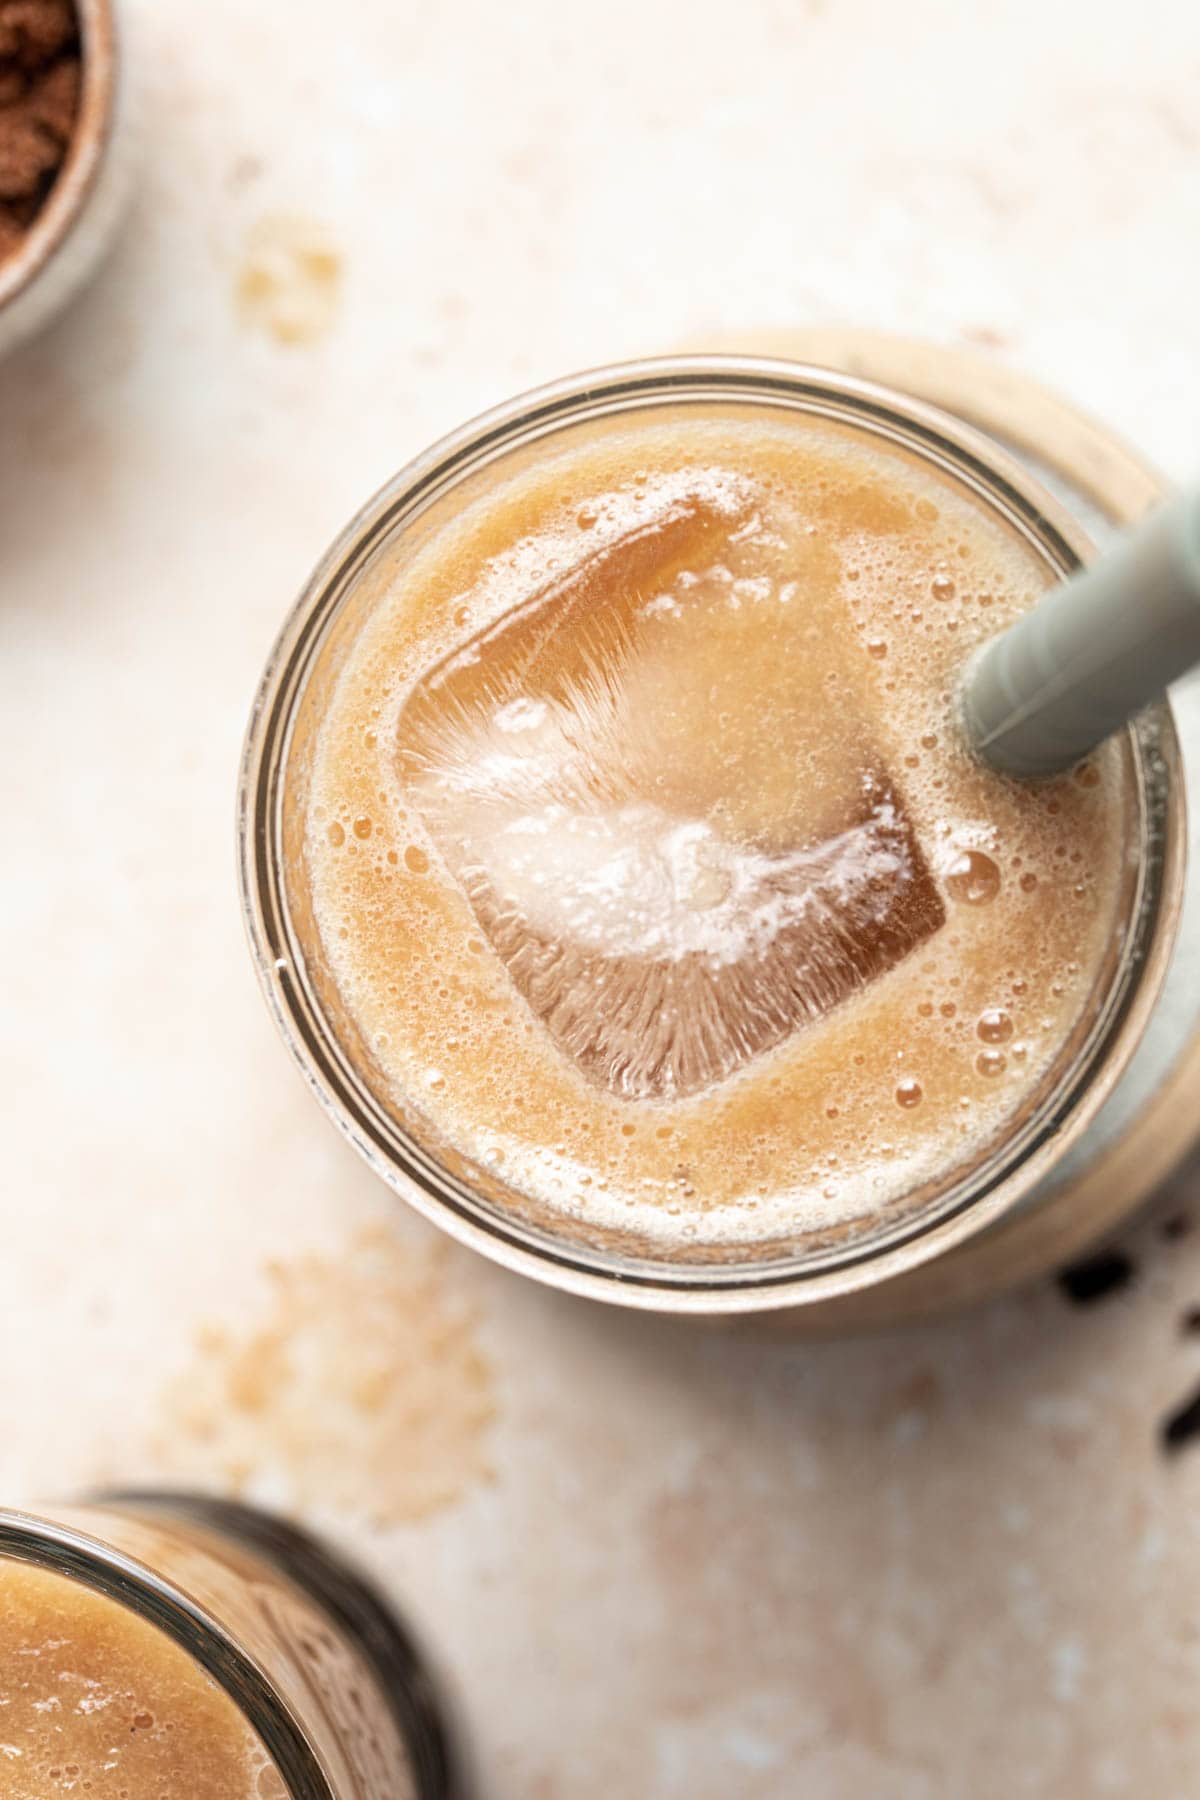 A close-up overhead image of winter melon milk tea.